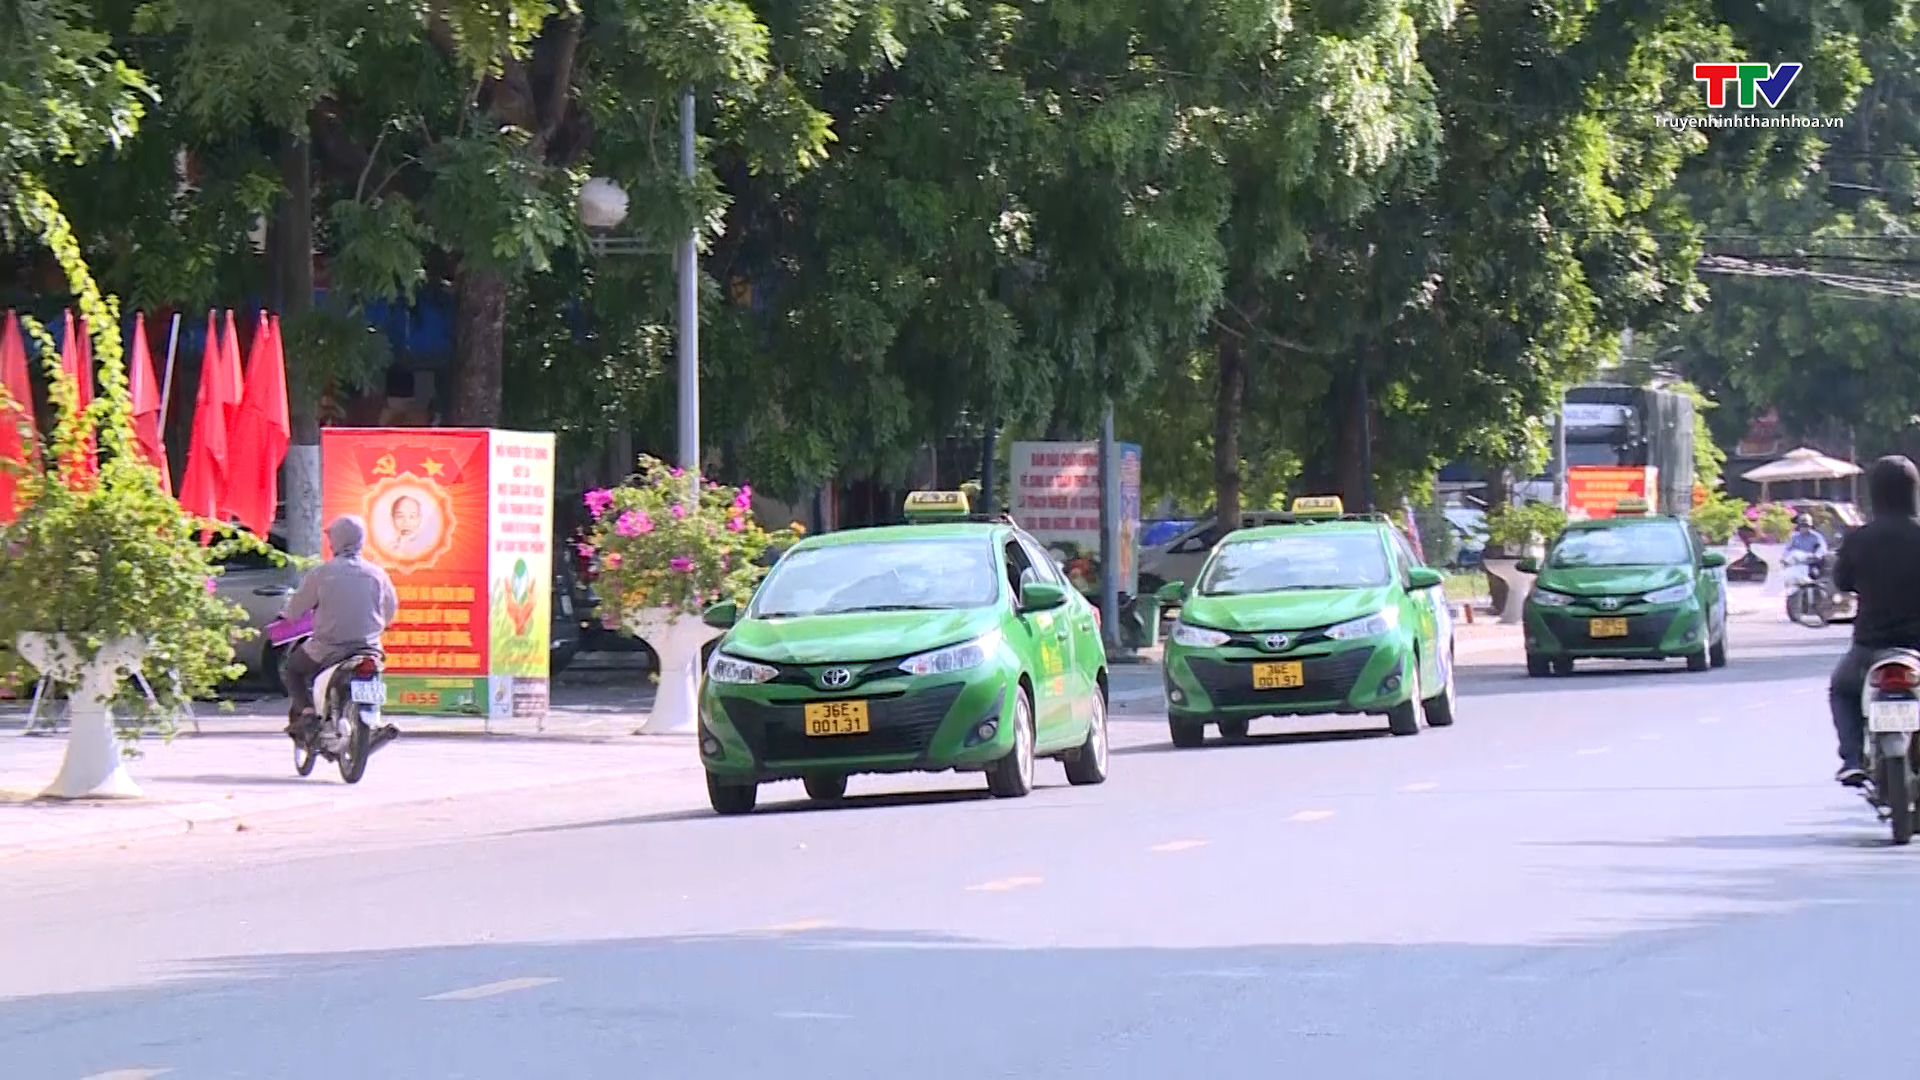 Các doanh nghiệp Taxi chuẩn bị phương án phục vụ hành khách dịp nghỉ lễ Quốc Khánh 2/9 - Ảnh 4.